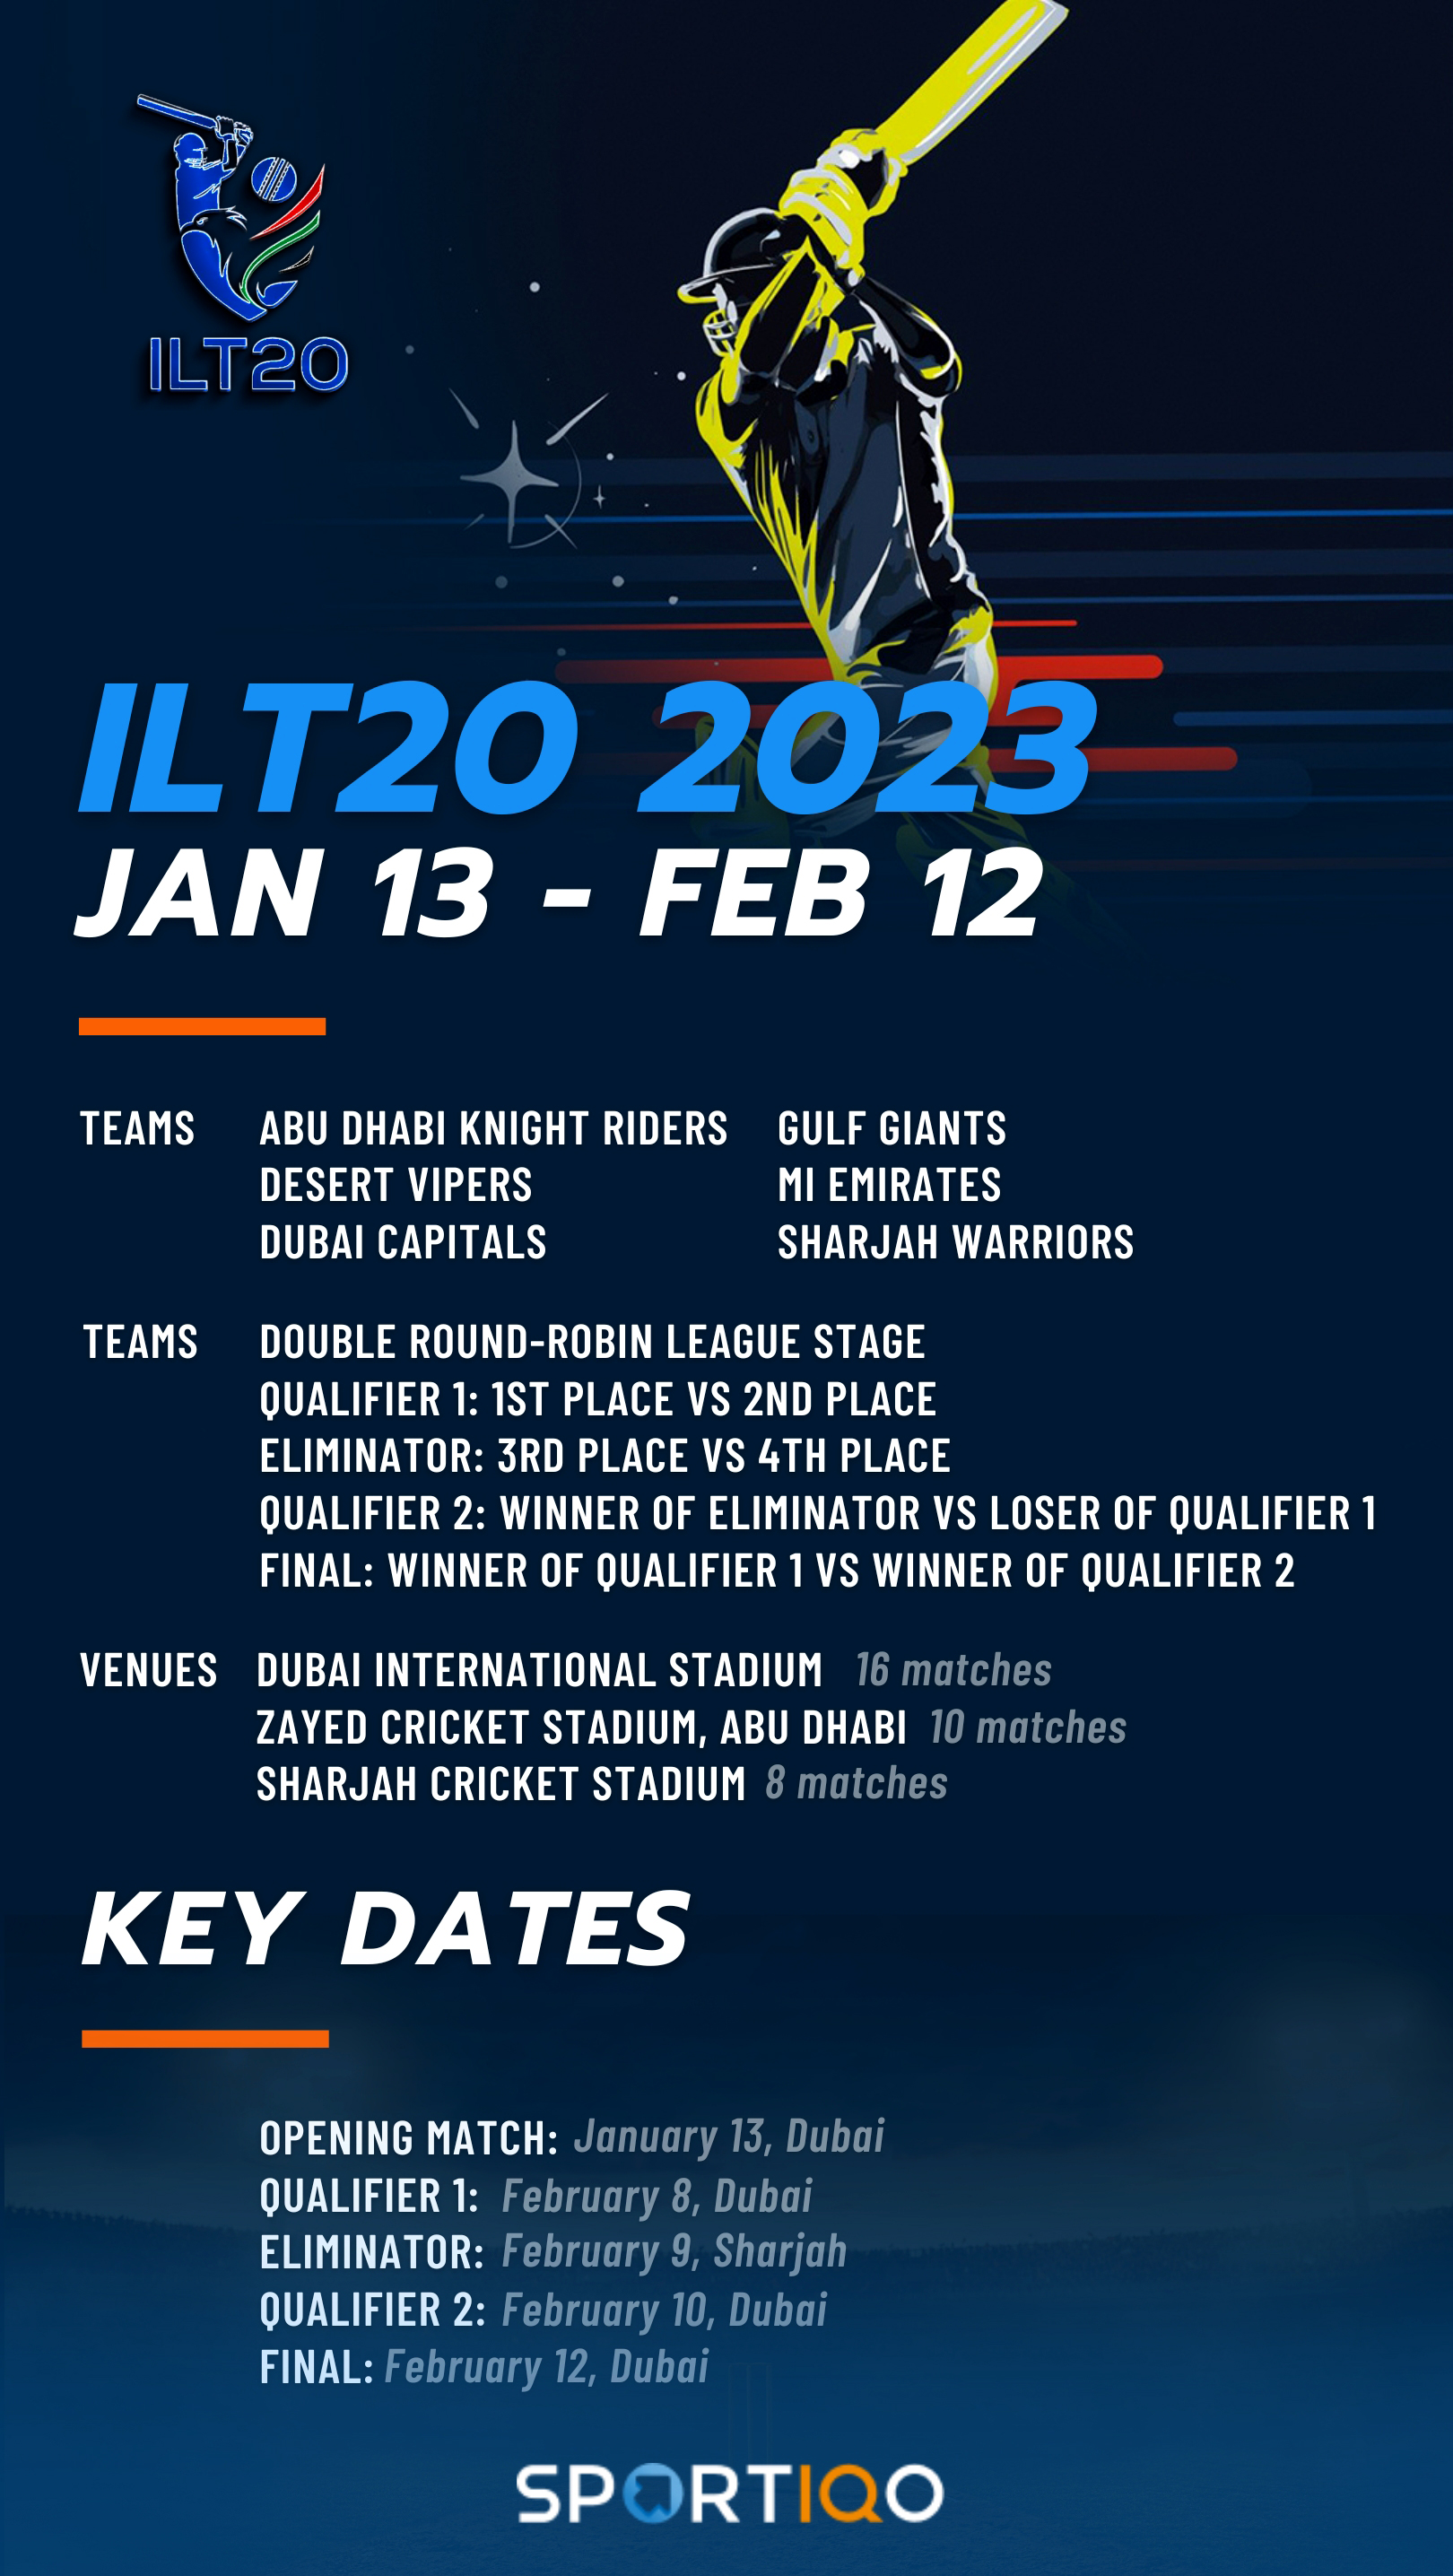 ILT20 schedule